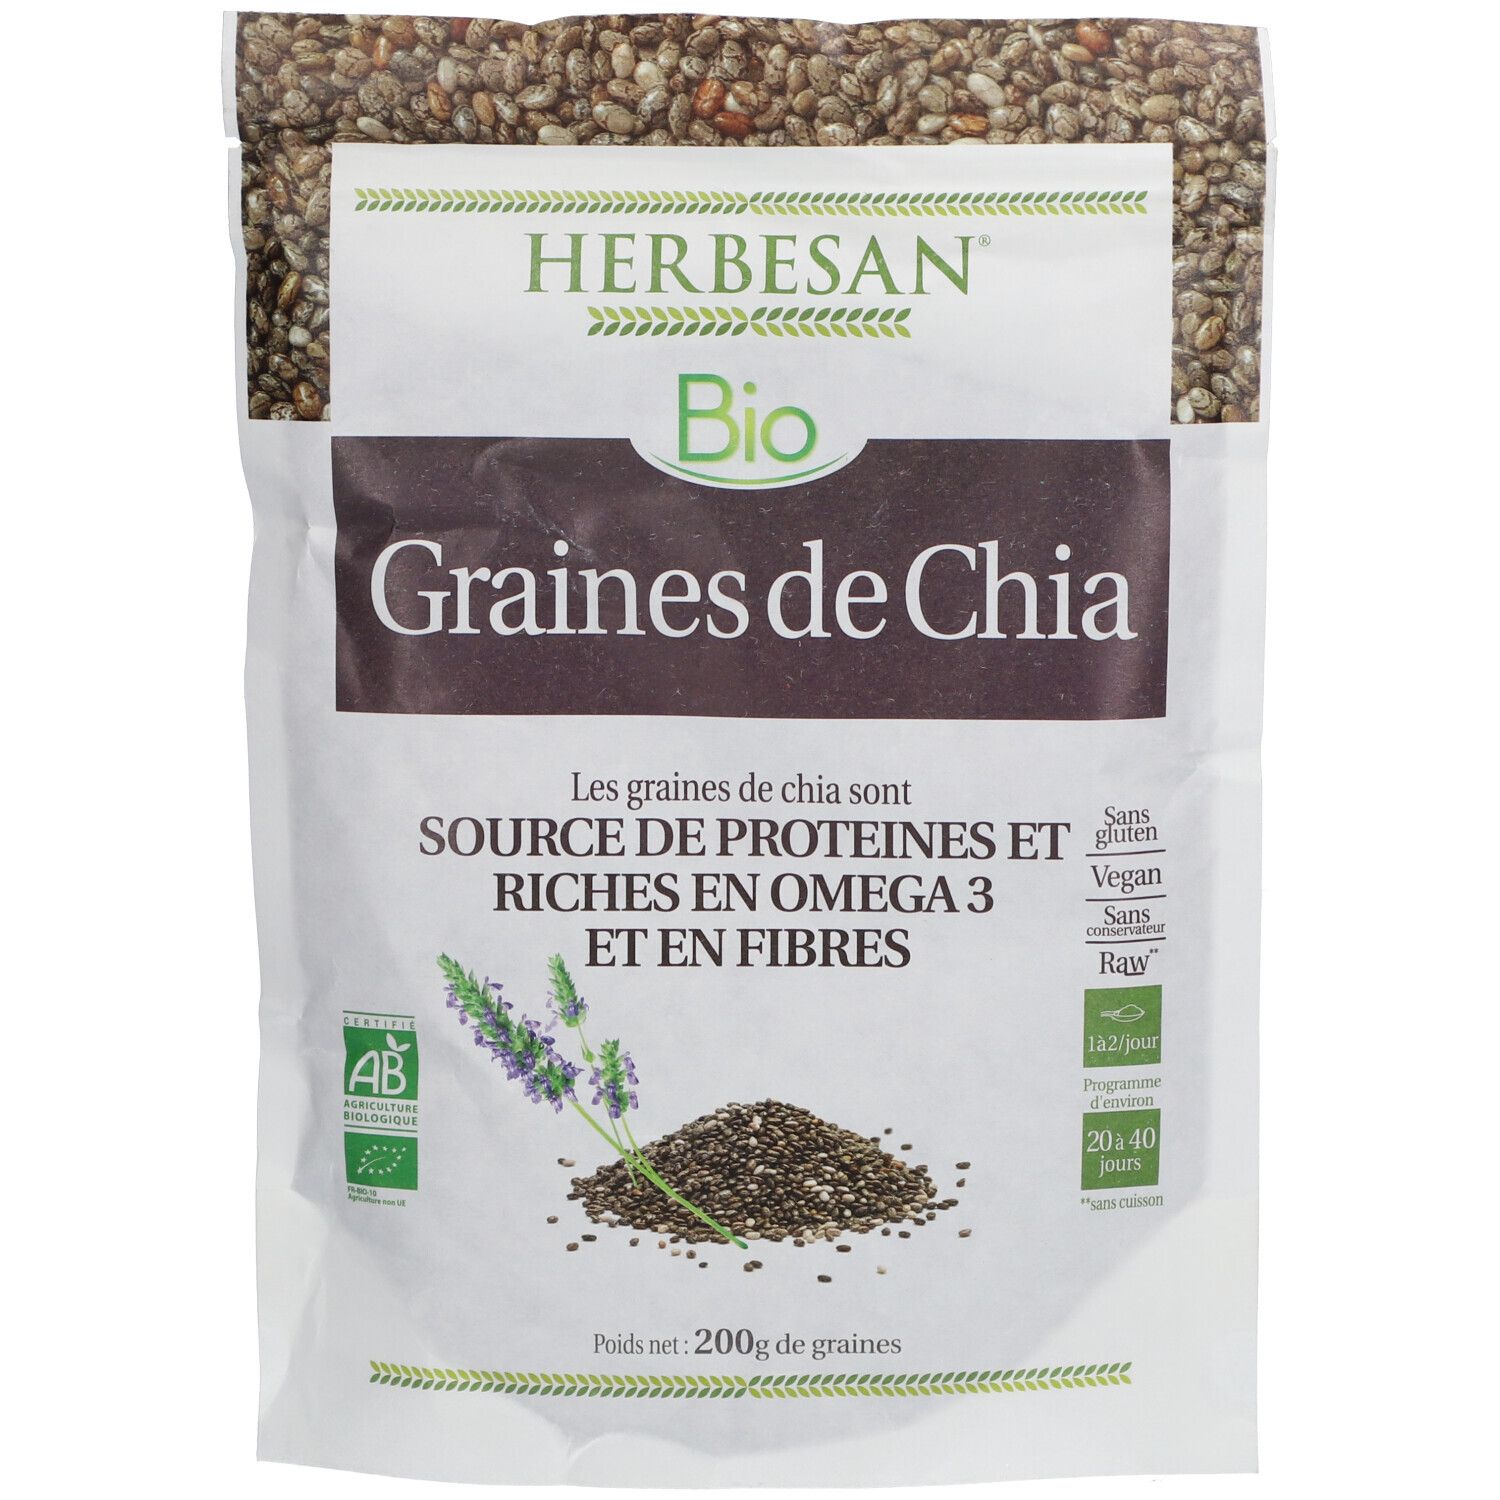 Herbesan® Graines de Chia